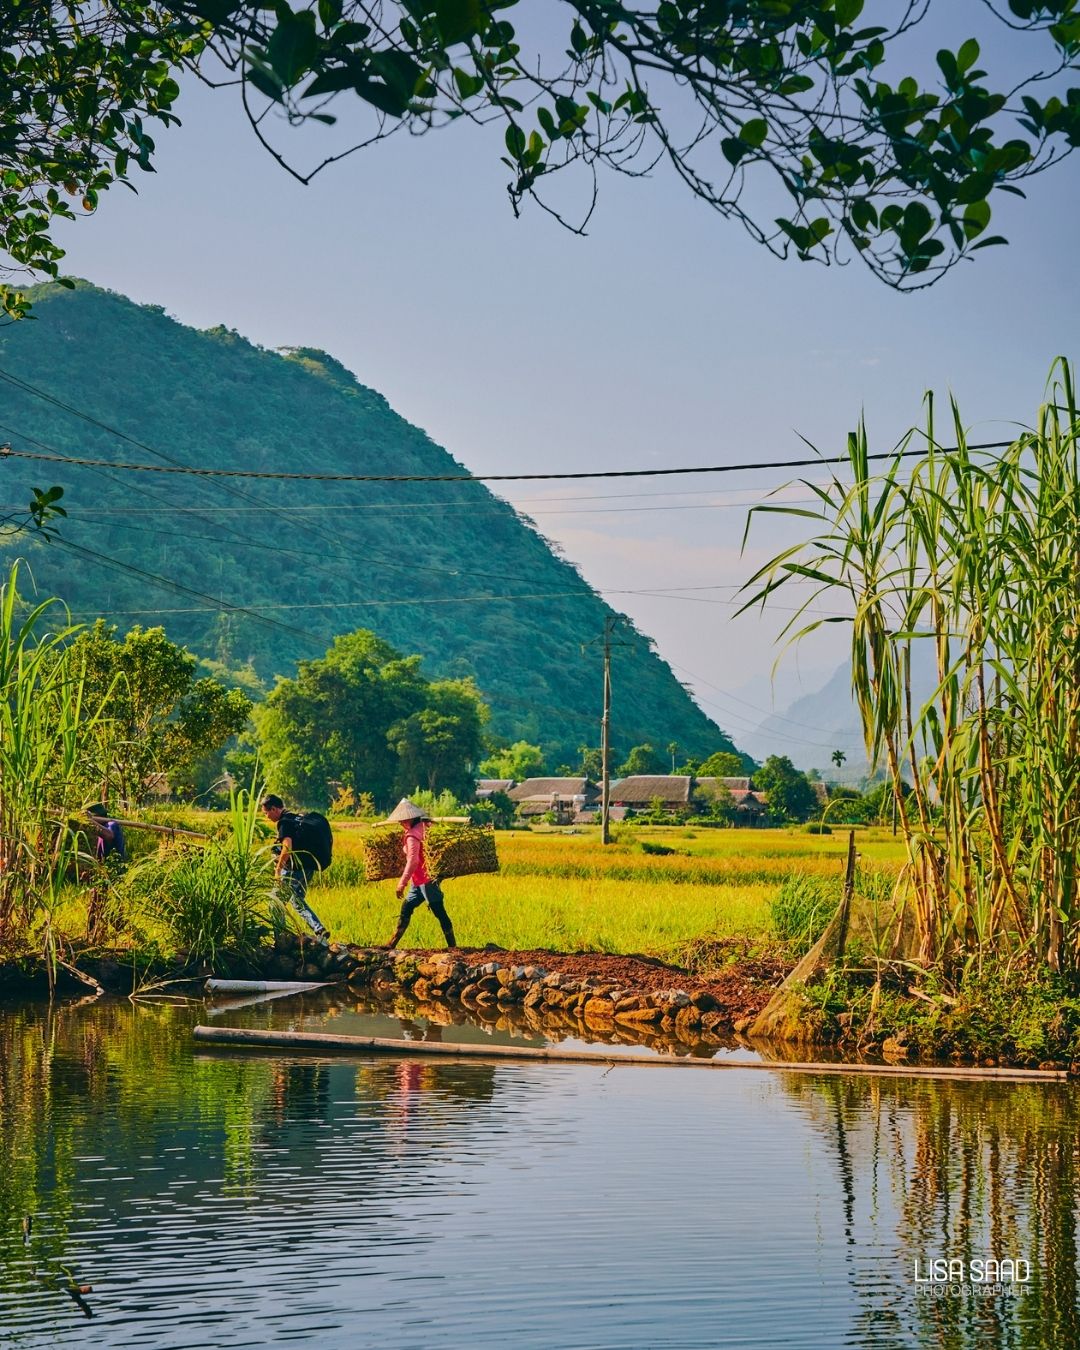 Crossing Bridges Vietnam Lisa Saad by LisaSaadPhotography on